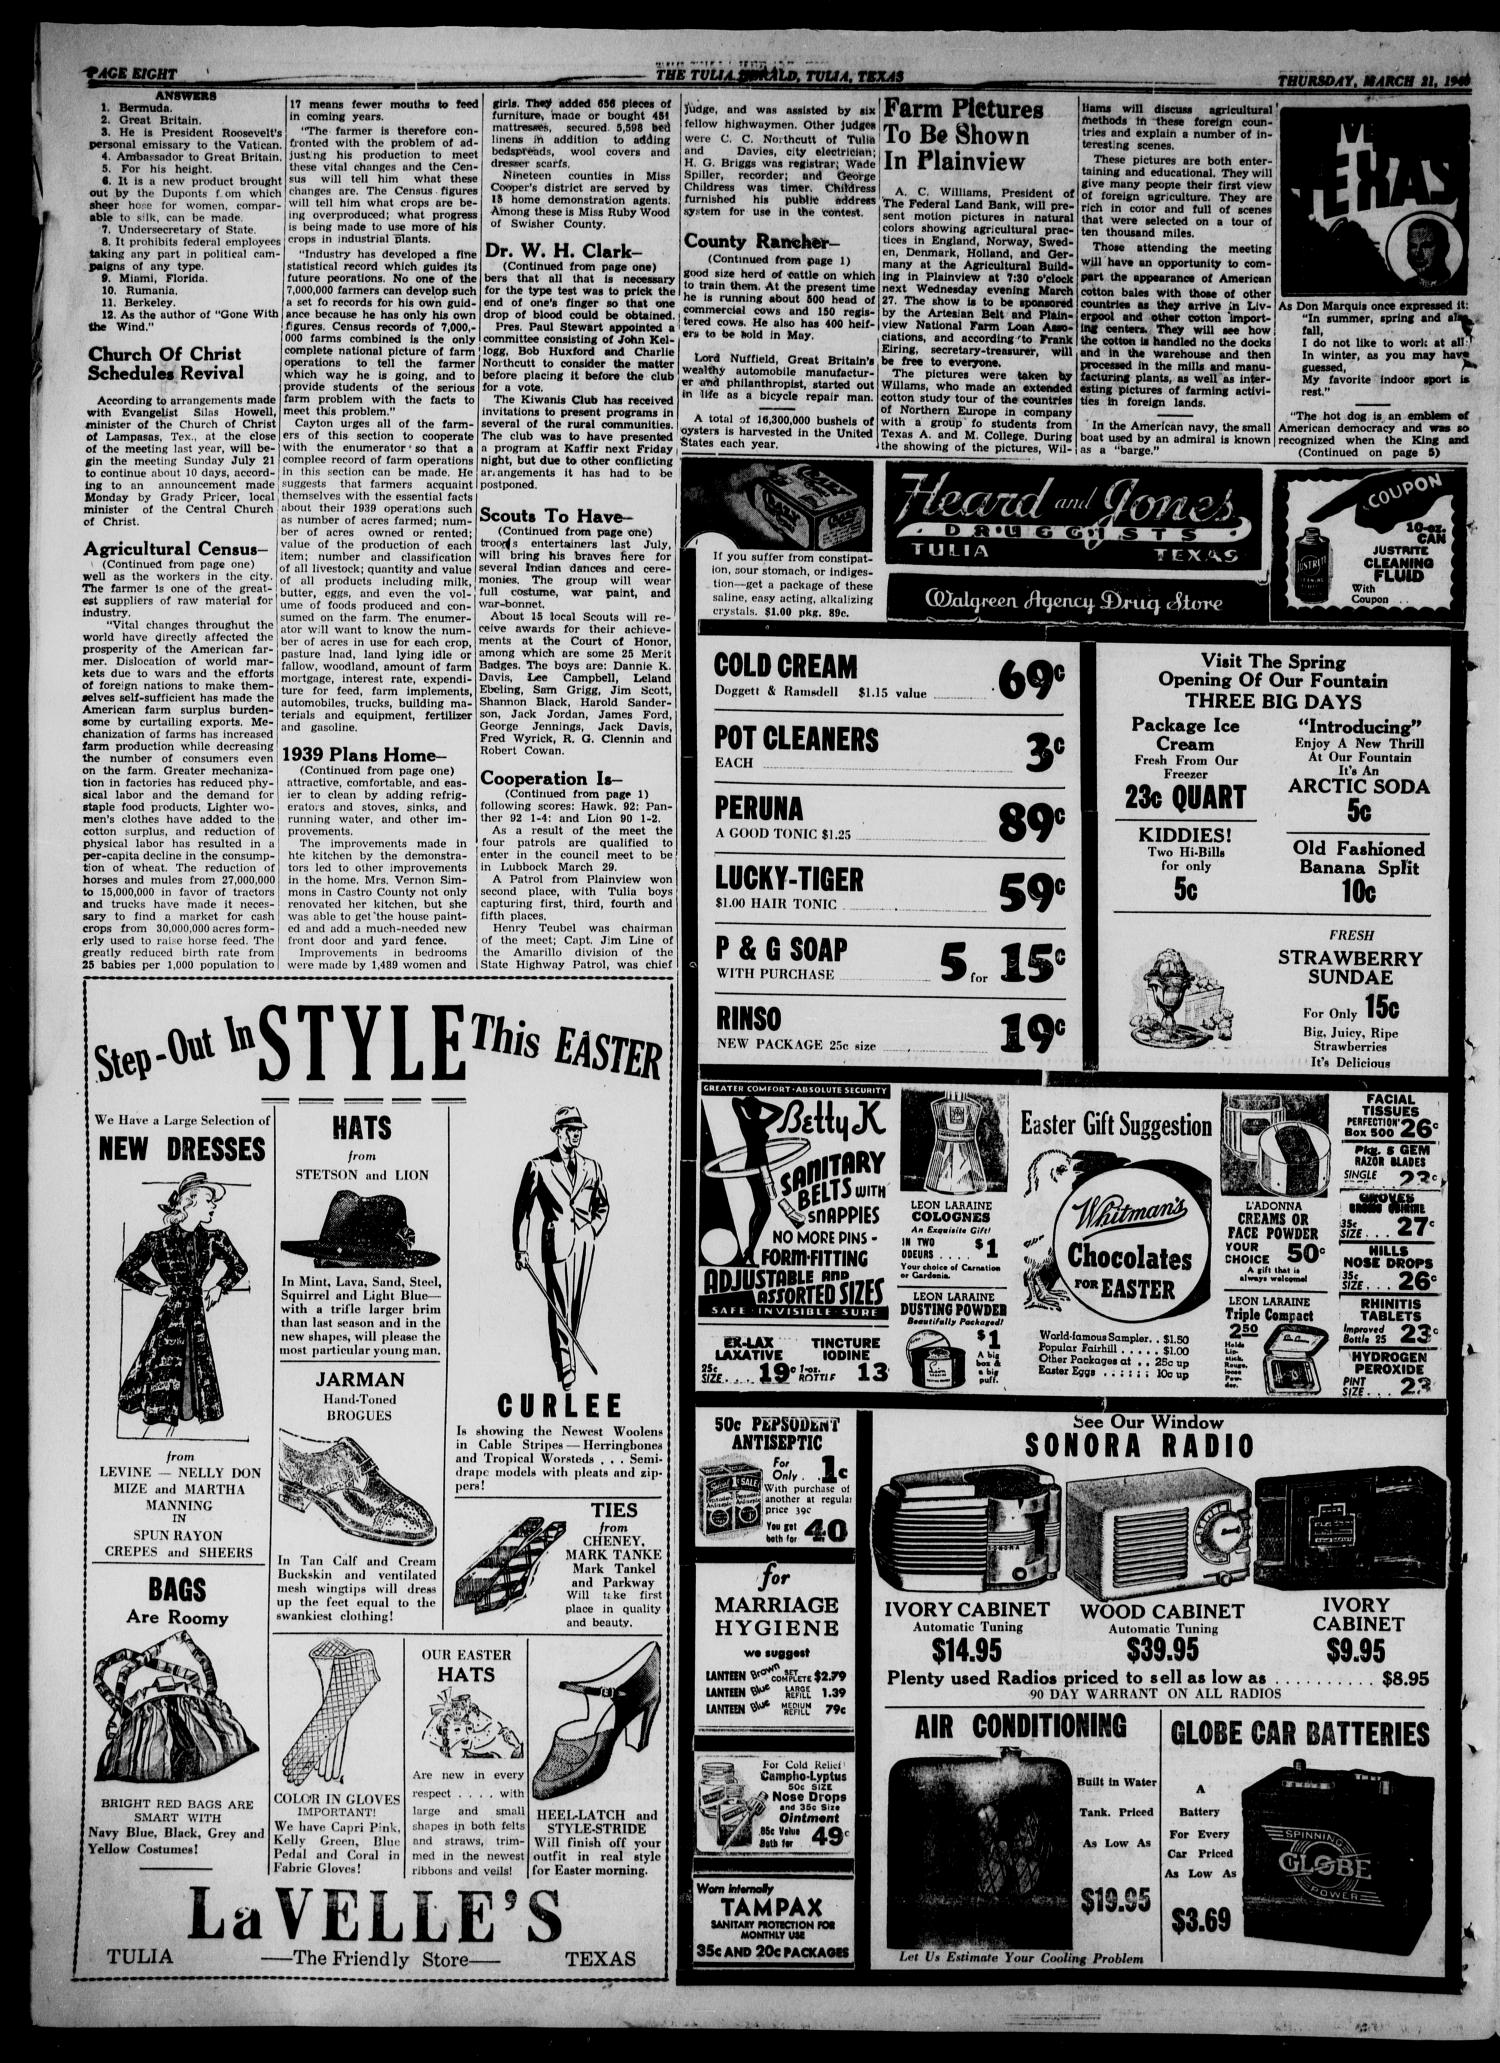 The Tulia Herald (Tulia, Tex), Vol. 31, No. 12, Ed. 1, Thursday, March 21, 1940
                                                
                                                    16
                                                